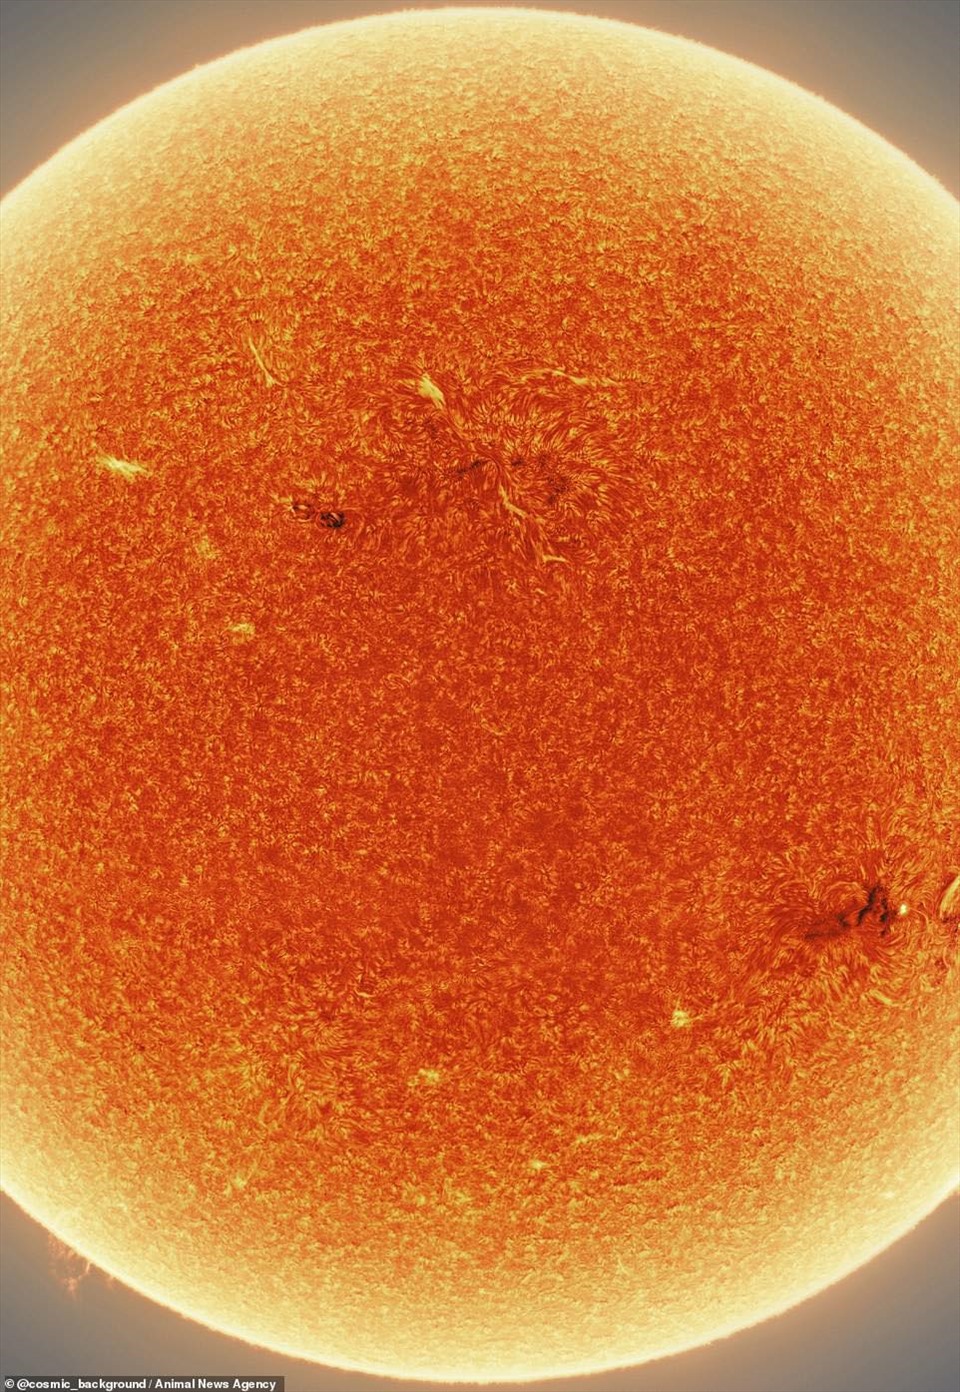 Mặt trời: Chiêm ngưỡng vẻ đẹp của Mặt trời từ các kính thiên văn chuyên nghiệp. Thưởng thức ánh sáng và màu sắc độc đáo của mặt trời, cùng tìm hiểu những bí mật về ngôi sao trung tâm của hệ mặt trời.